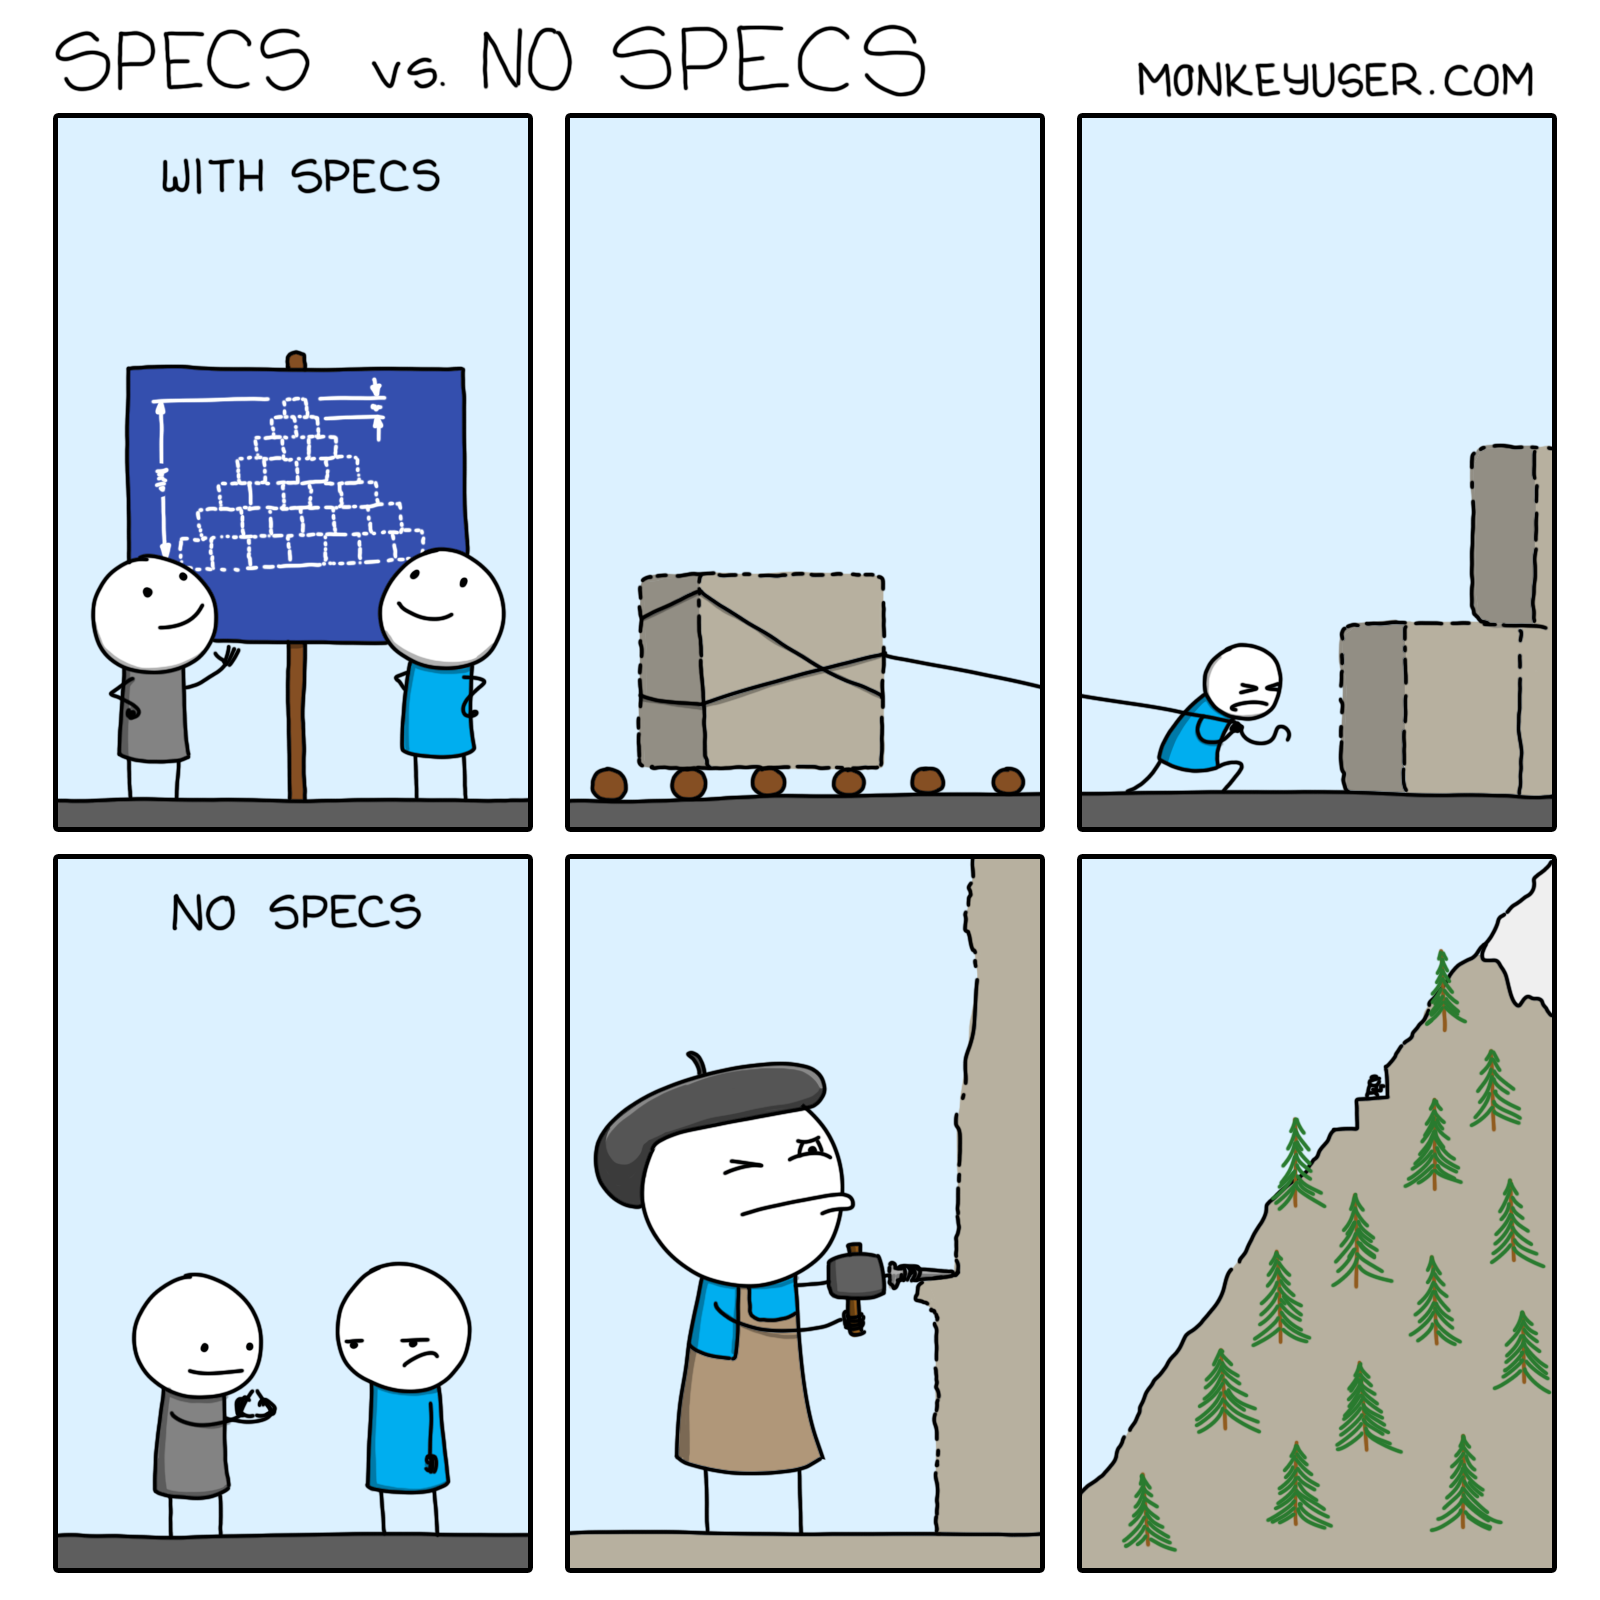 Specs VS No Specs